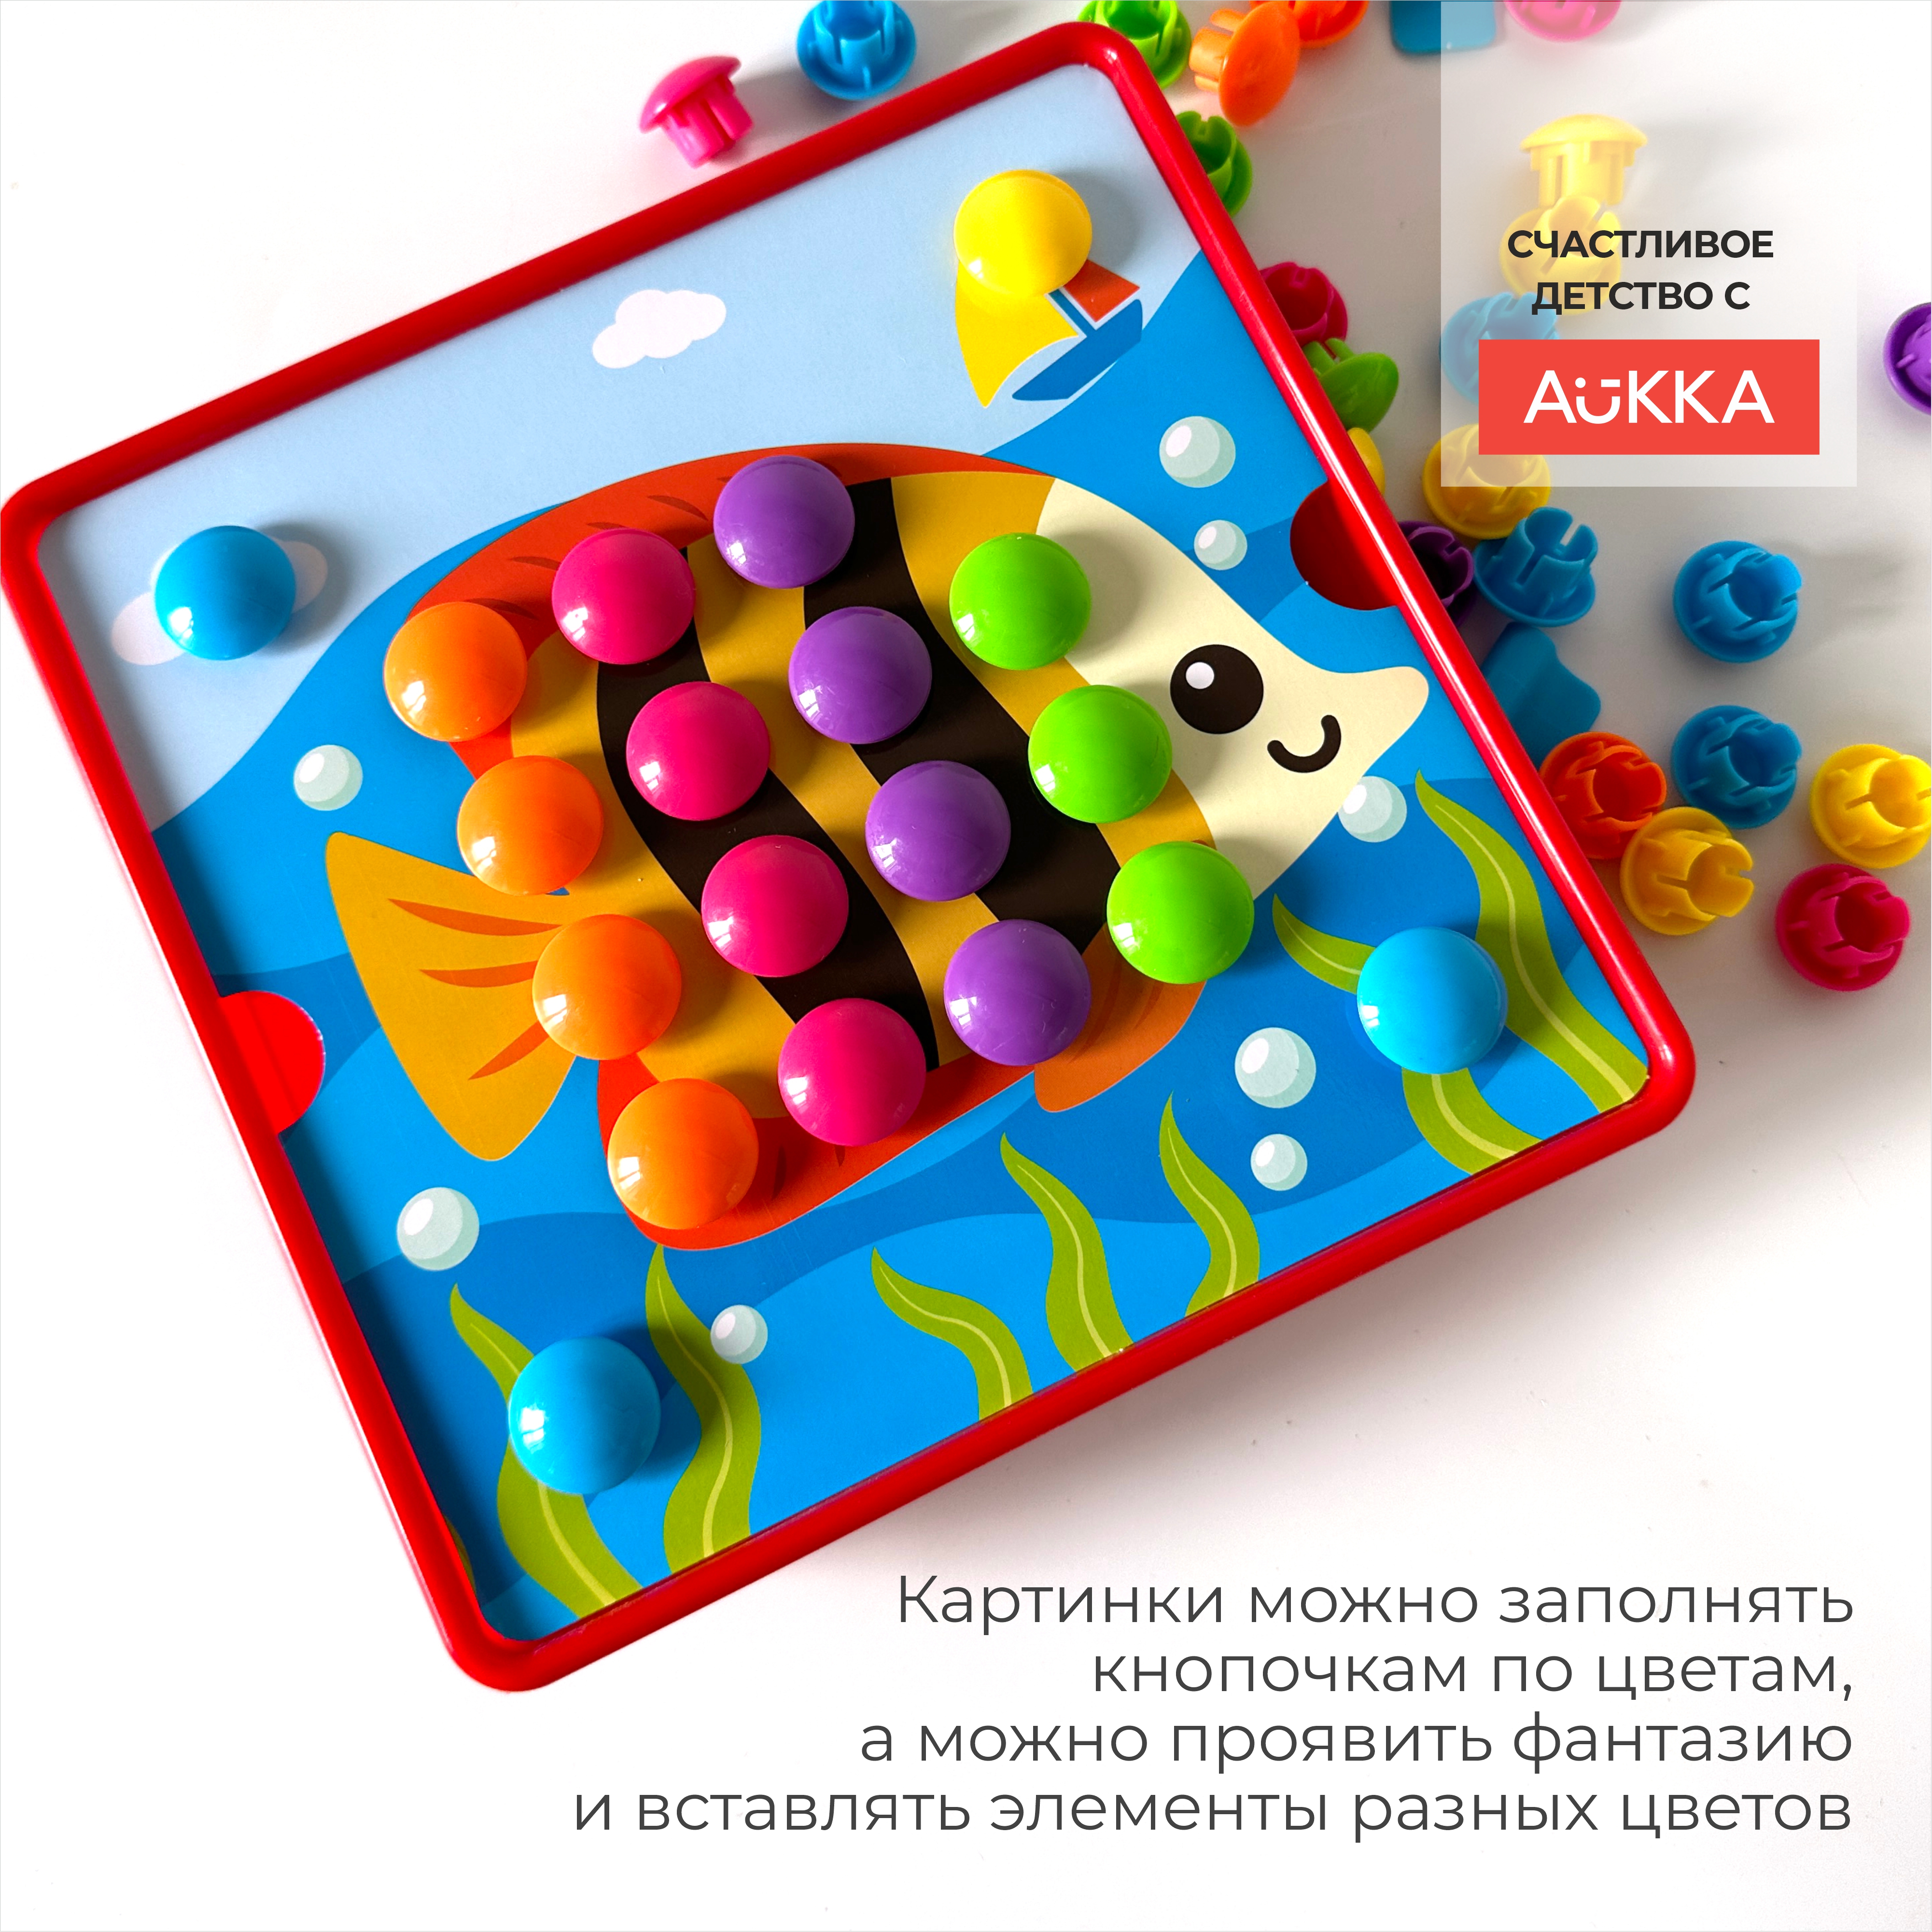 Мозаика AUKKA развивающая игрушка для малышей в подарок - фото 6